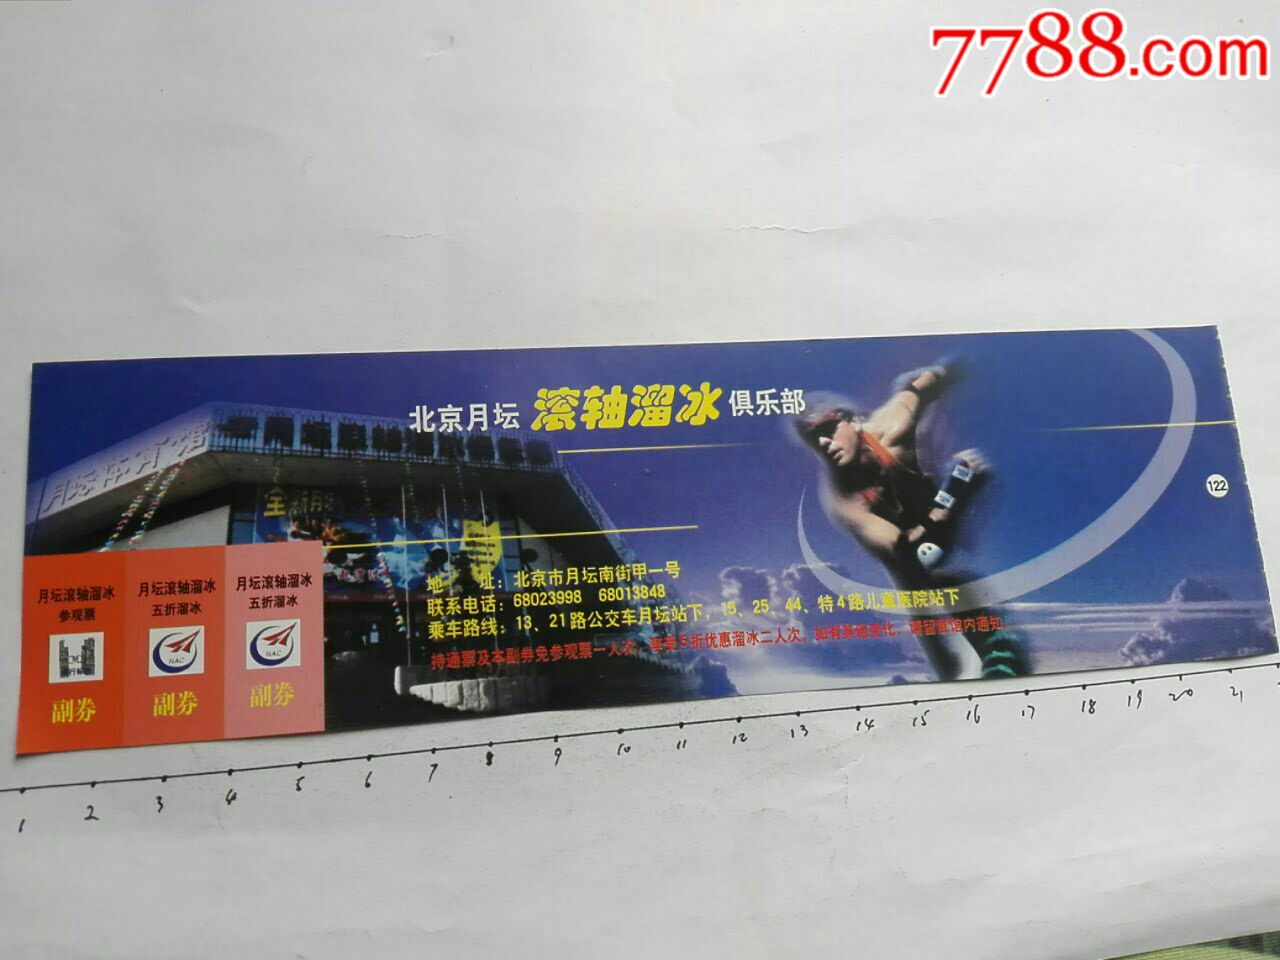 北京月坛滚轴溜冰俱乐部